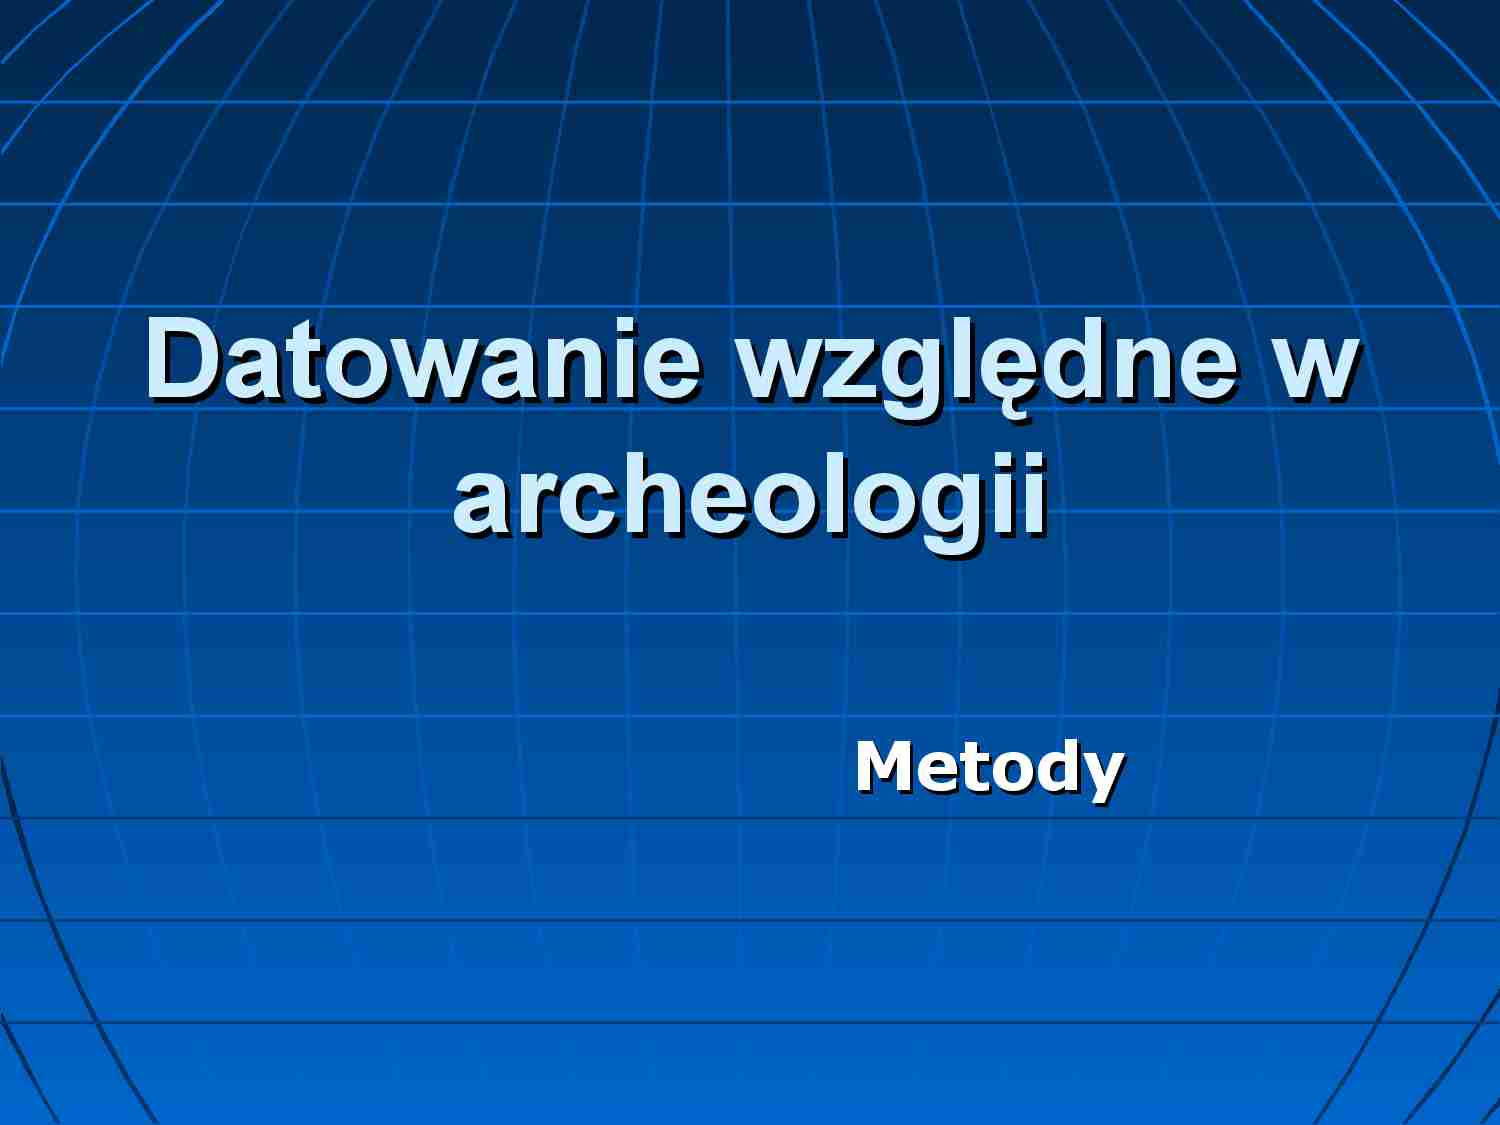 Datowanie względne w archeologii - strona 1